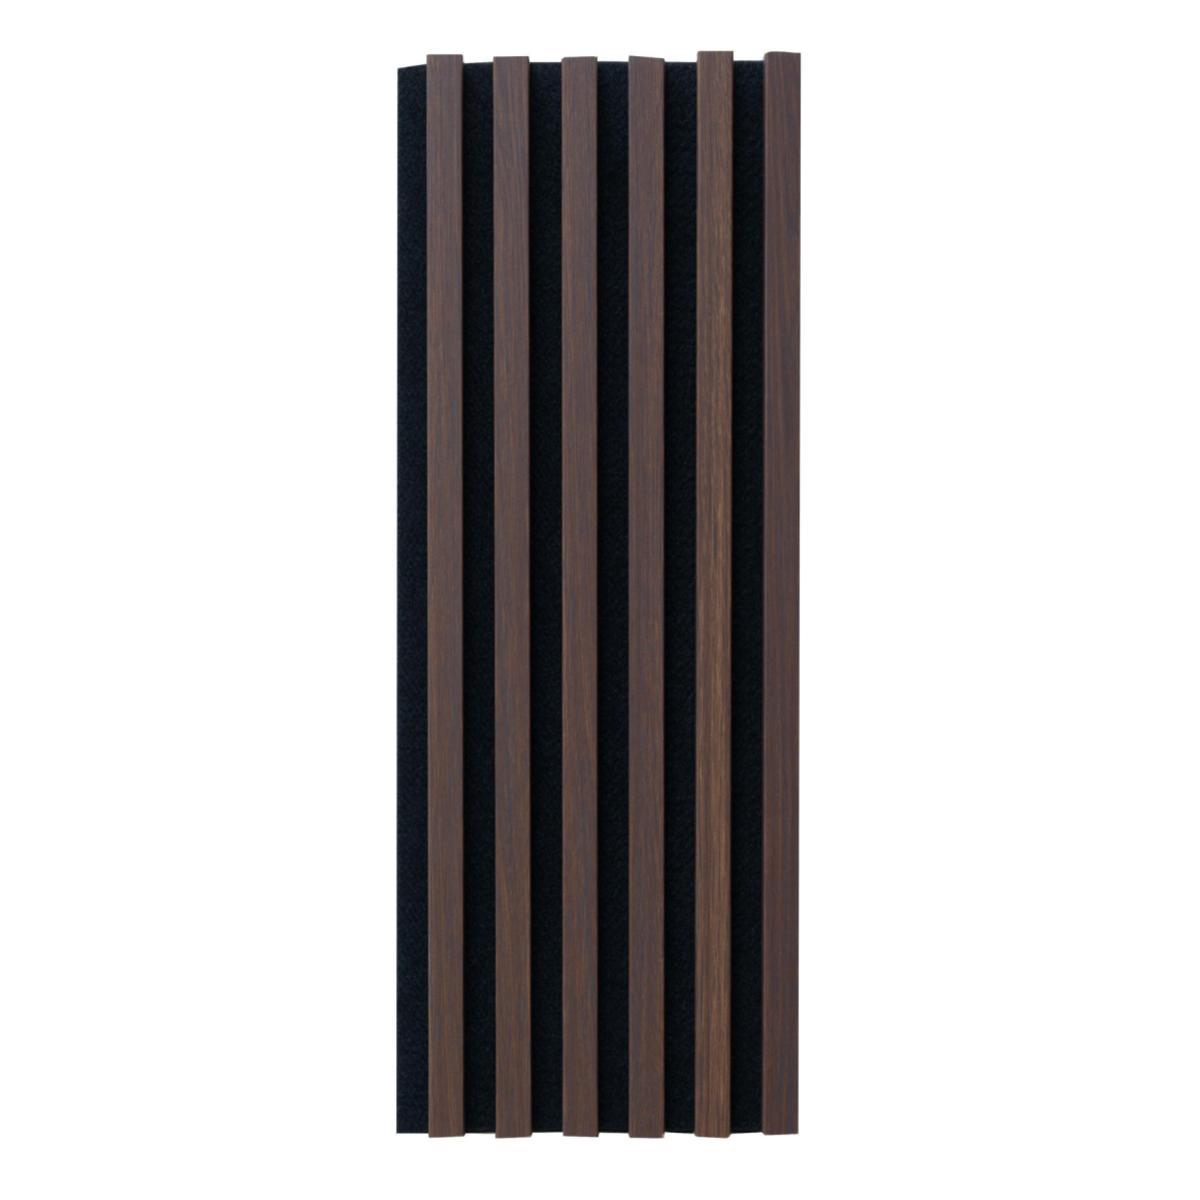 Стінова акустична МДФ панель. Колір: войлок - чорний, рейки - дуб темний. ВхШ: 2700 мм x 300 мм, 1 шт.